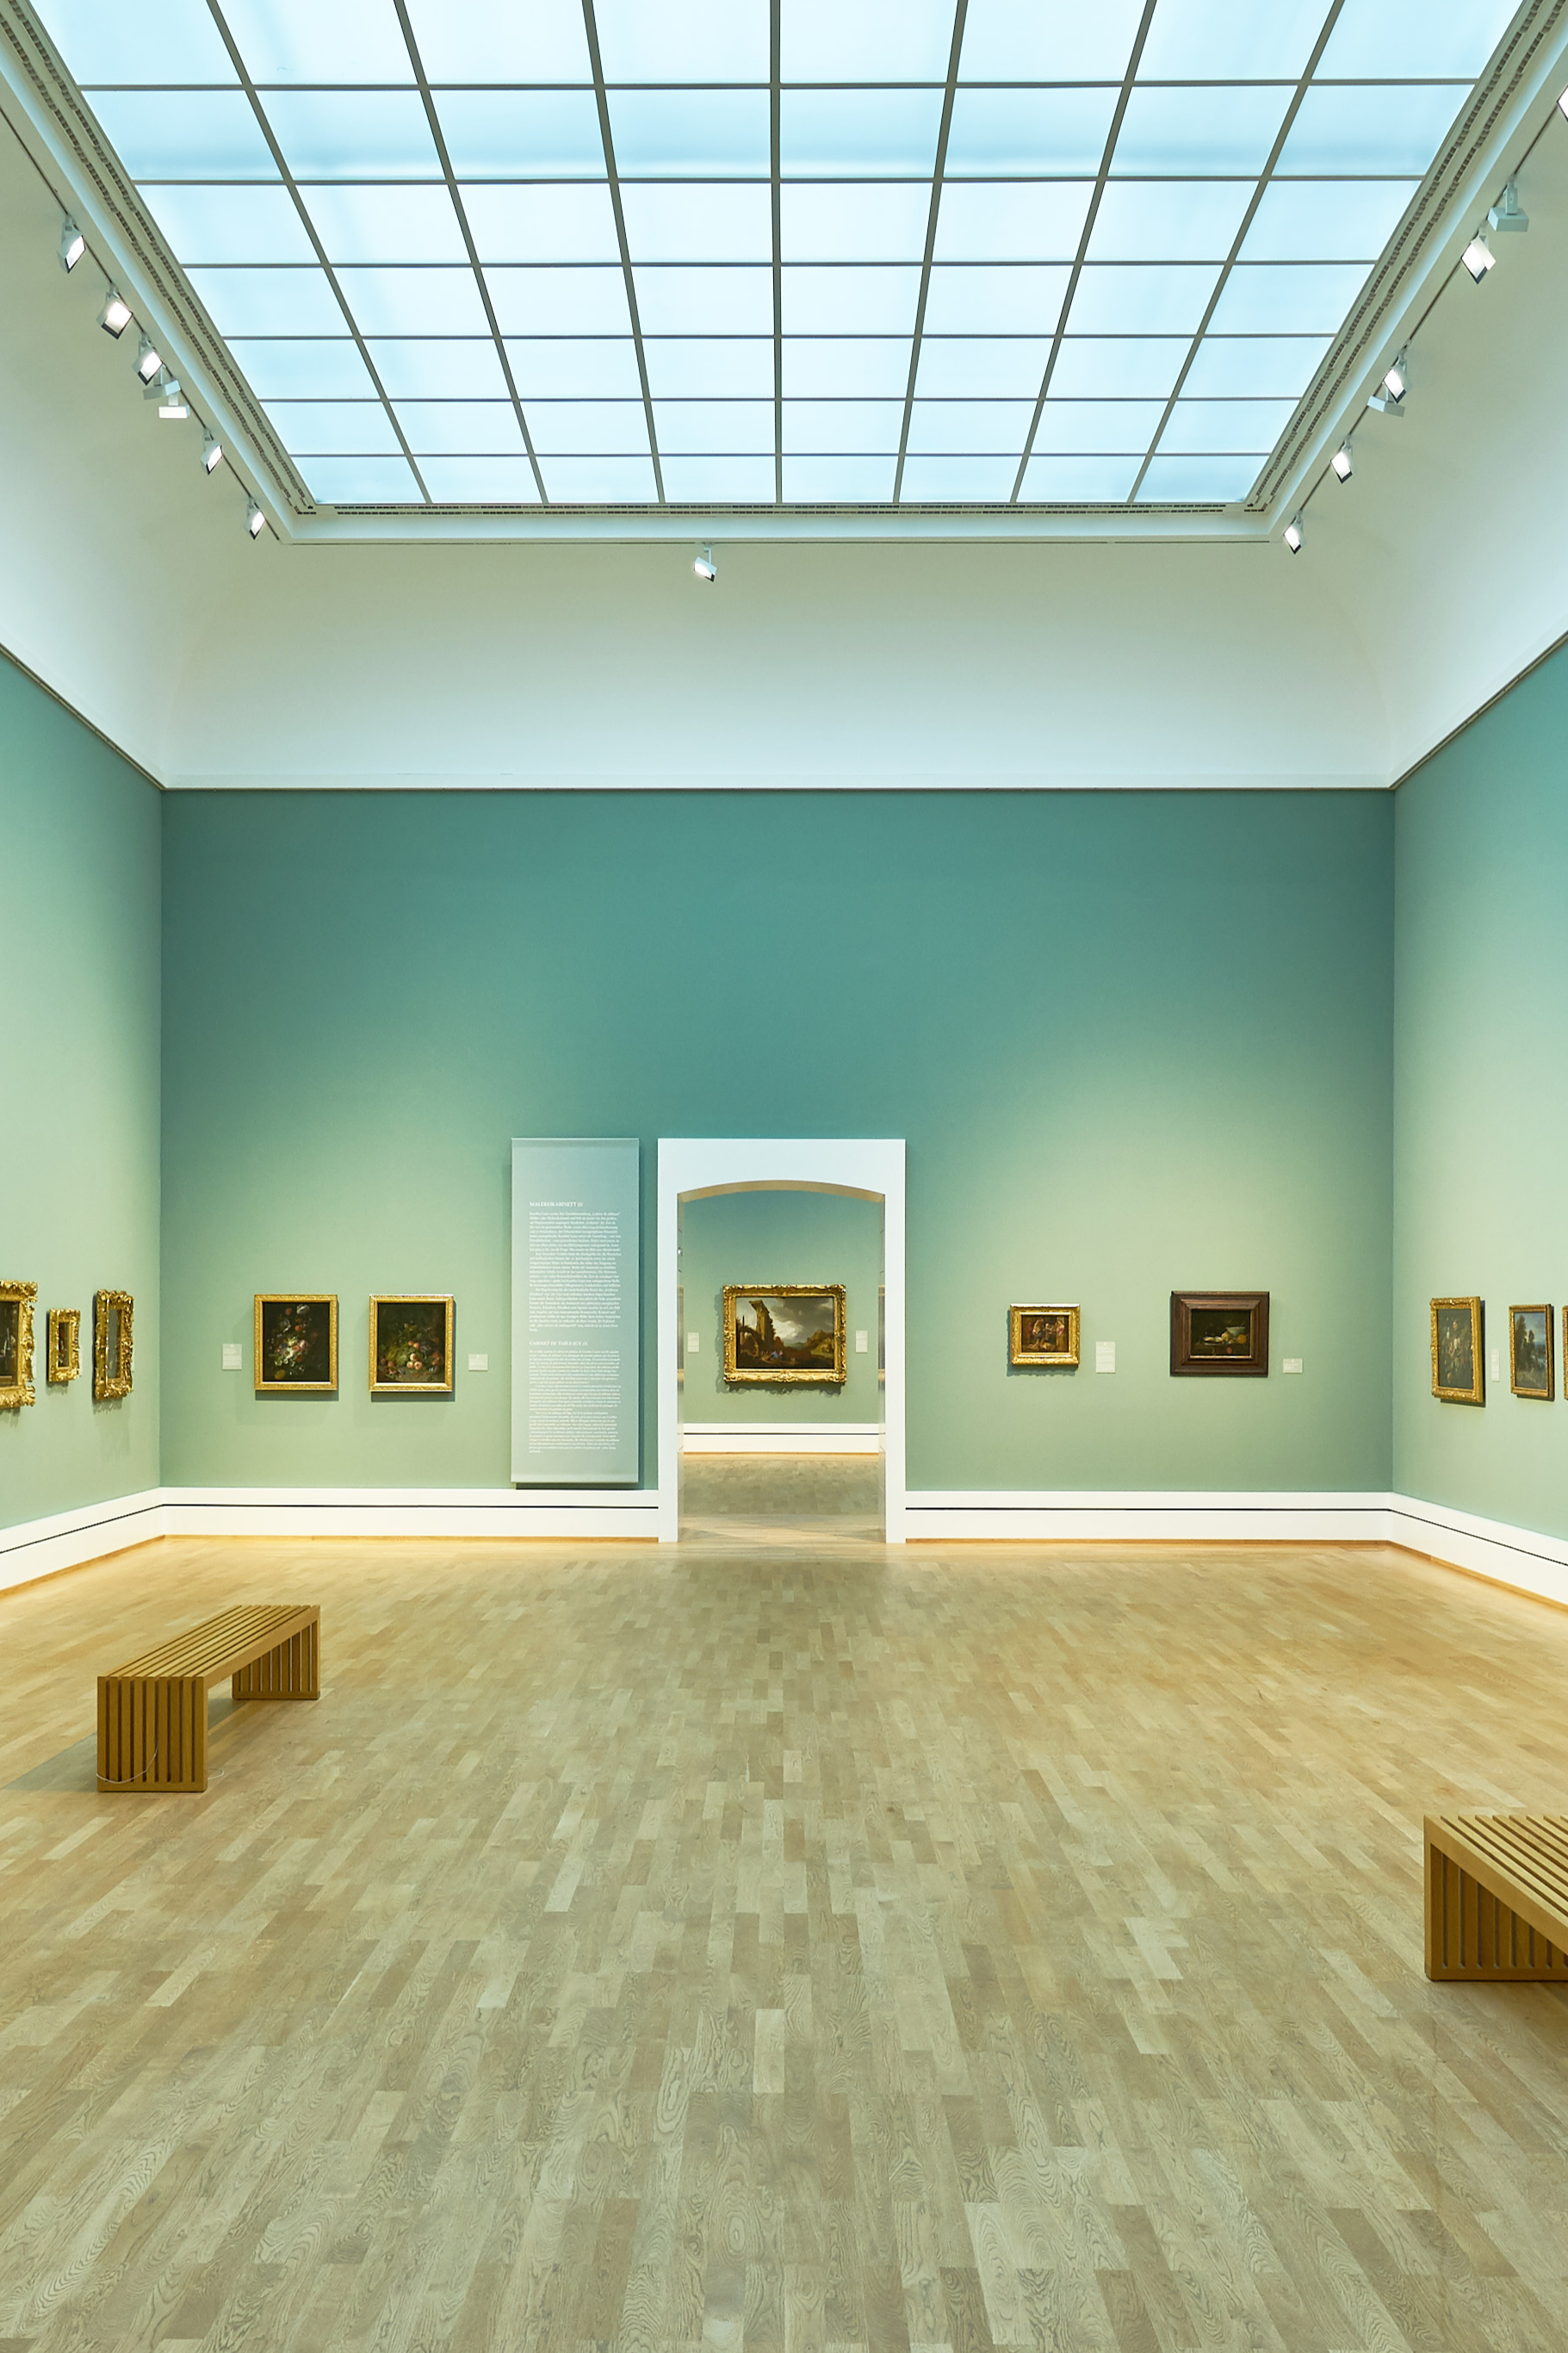 Blick in die Galerieräume der Staatlichen Kunsthalle Karlsruhe, in der Niederländische Meister in Goldrahmen zu sehen sind.